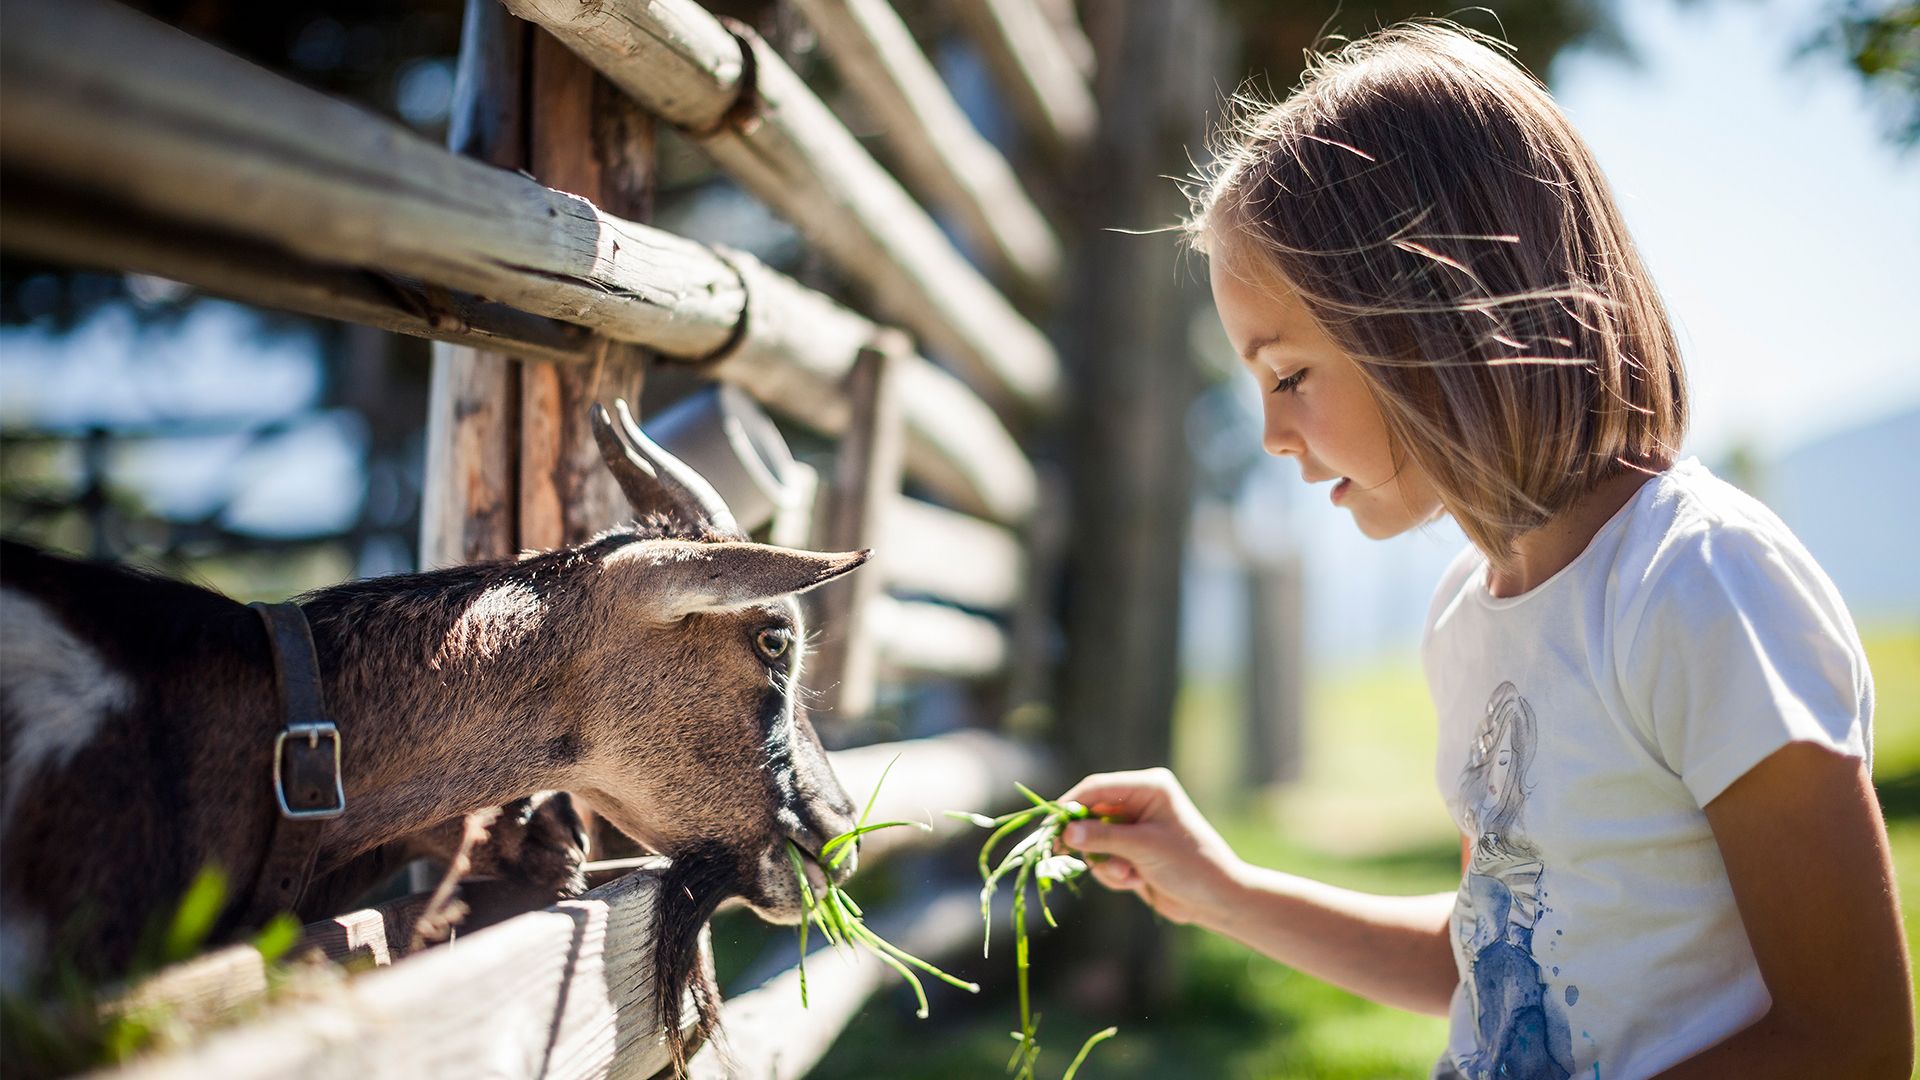 Tiere machen Kinder einfach glücklich. Es reift die Freundschaft und Verbindung zueinander.